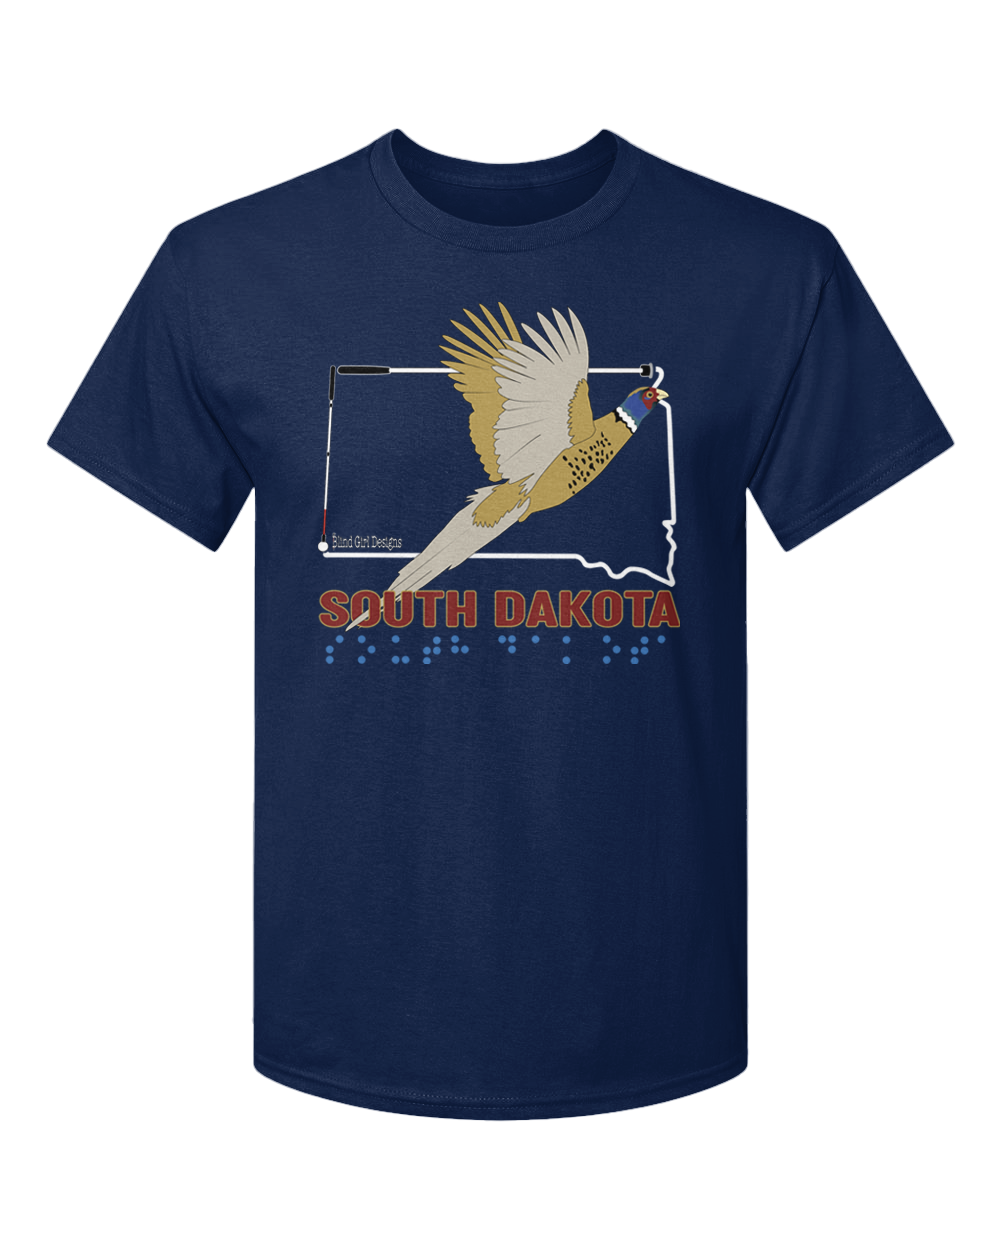 South Dakota T-Shirt - Navy